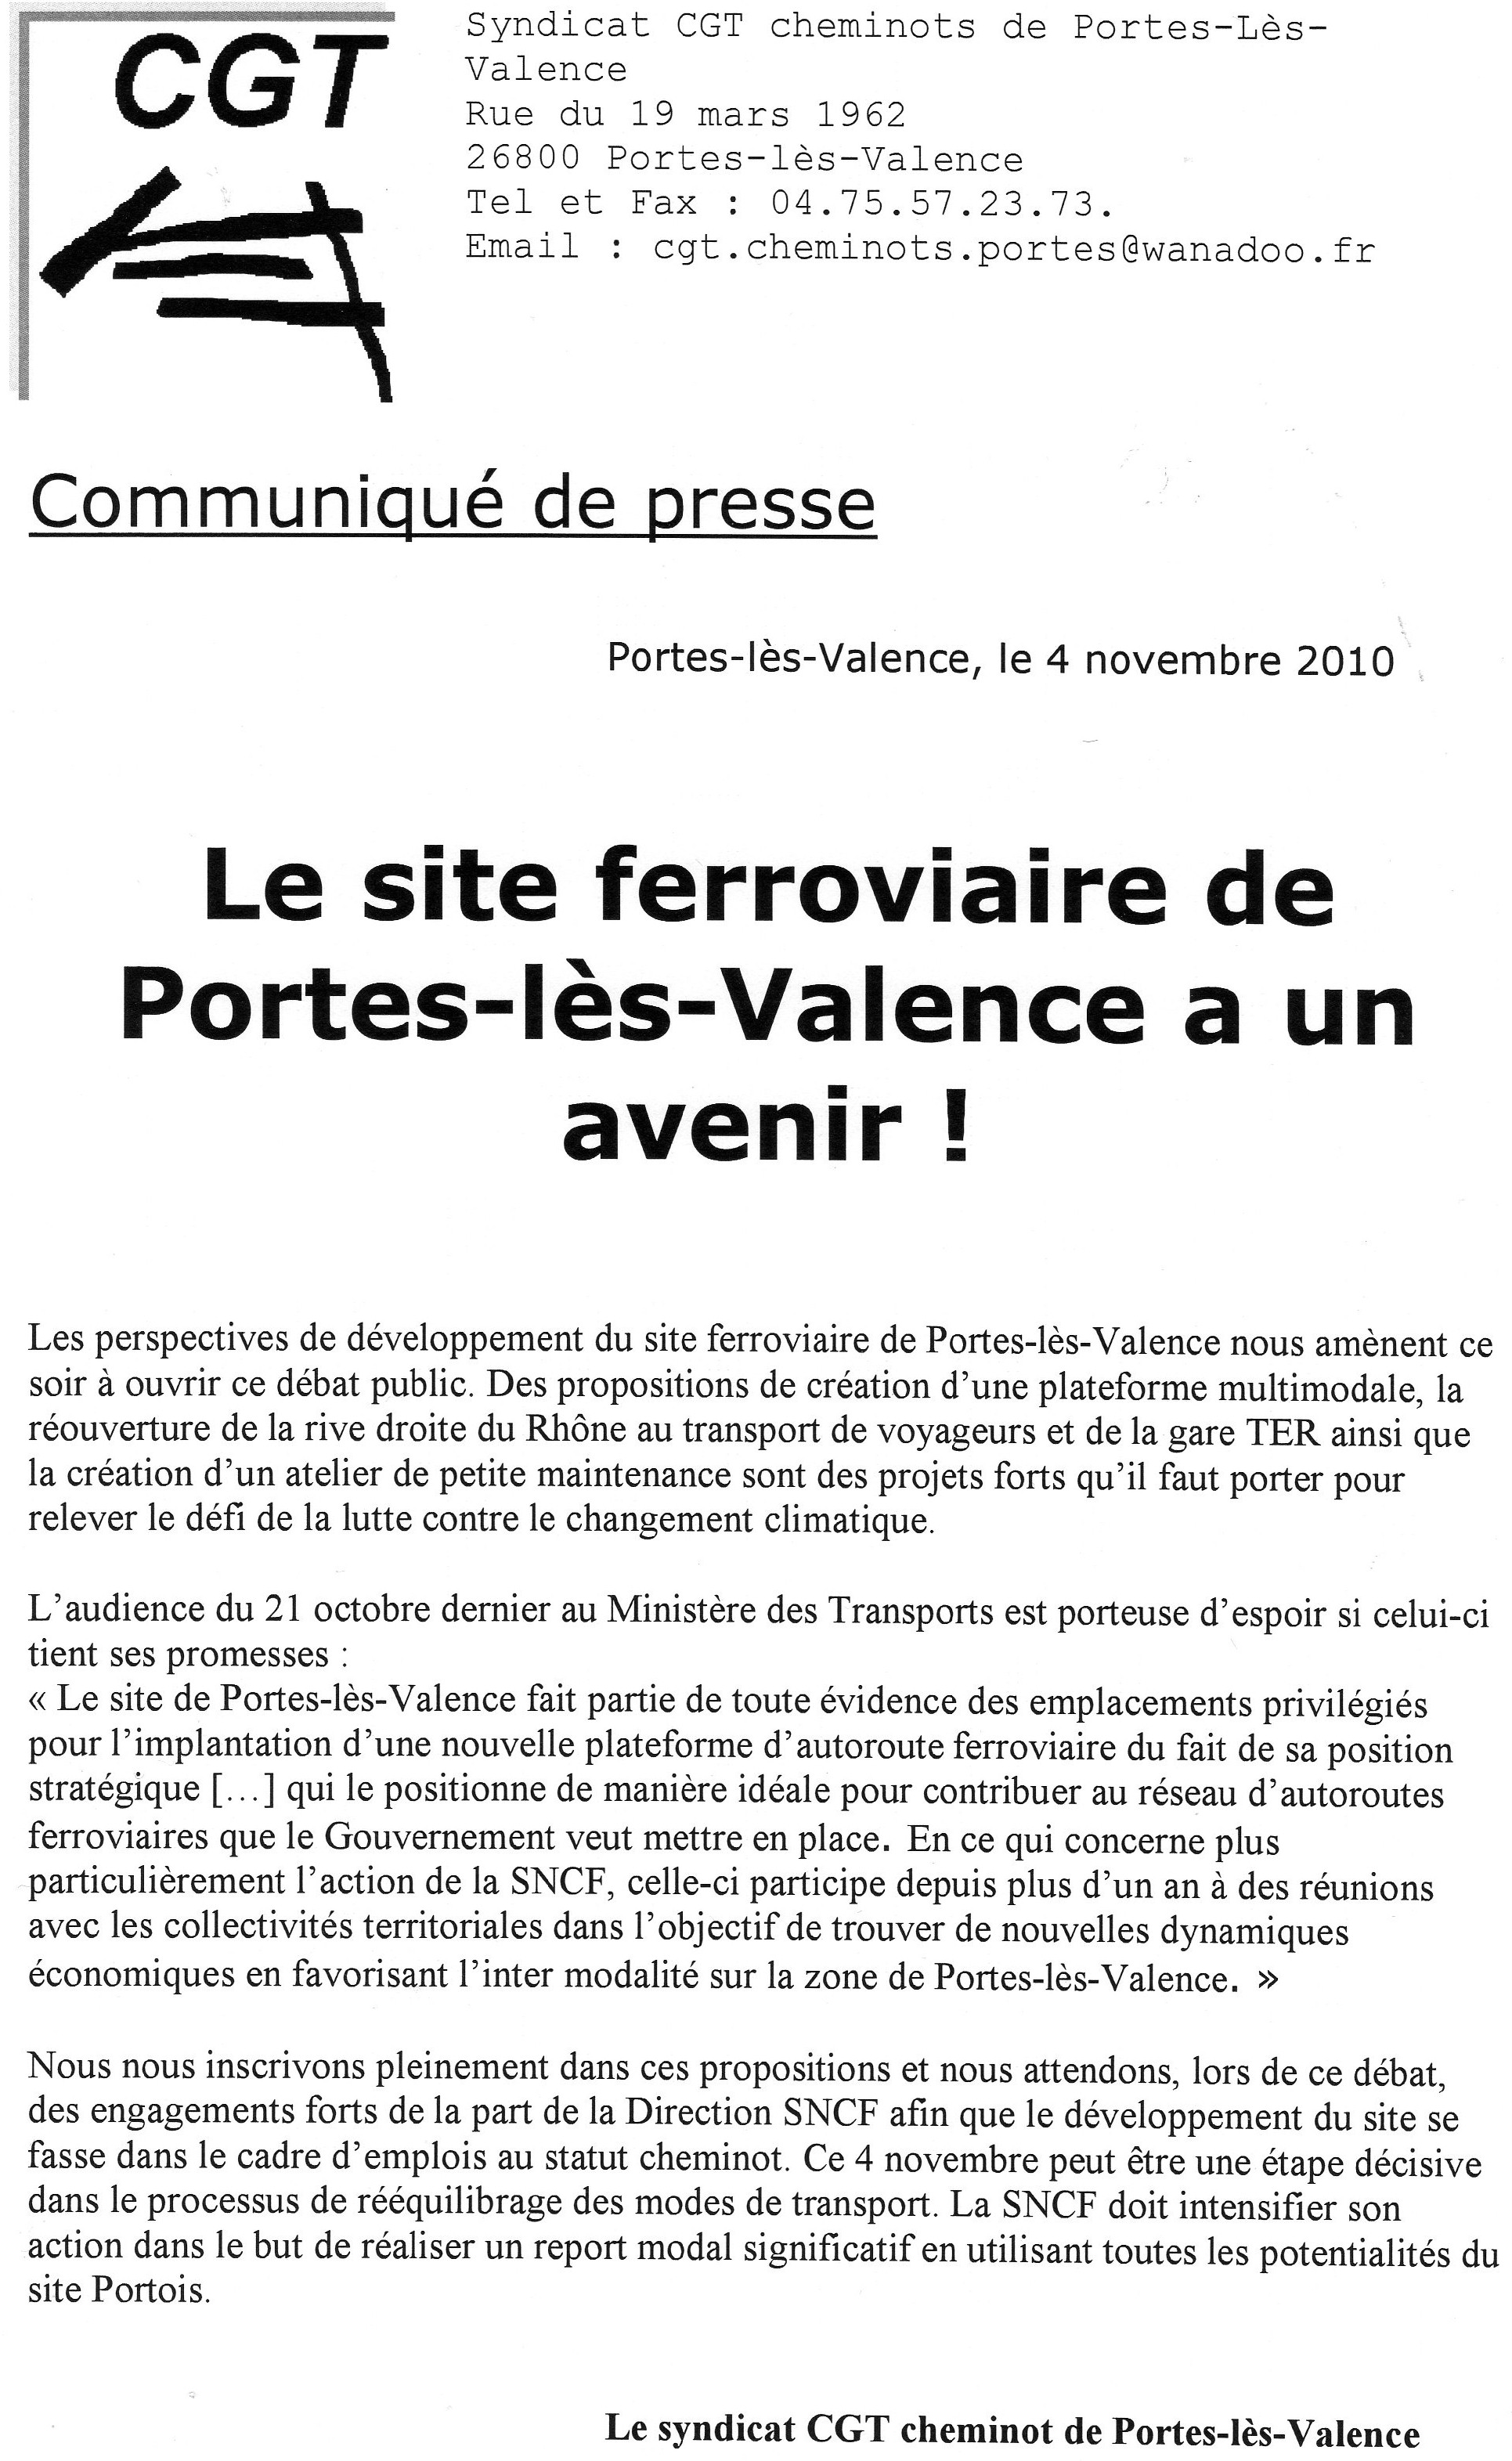 Communiqué de presse sur l'avenir du site portois, par le syndicat CGT cheminots